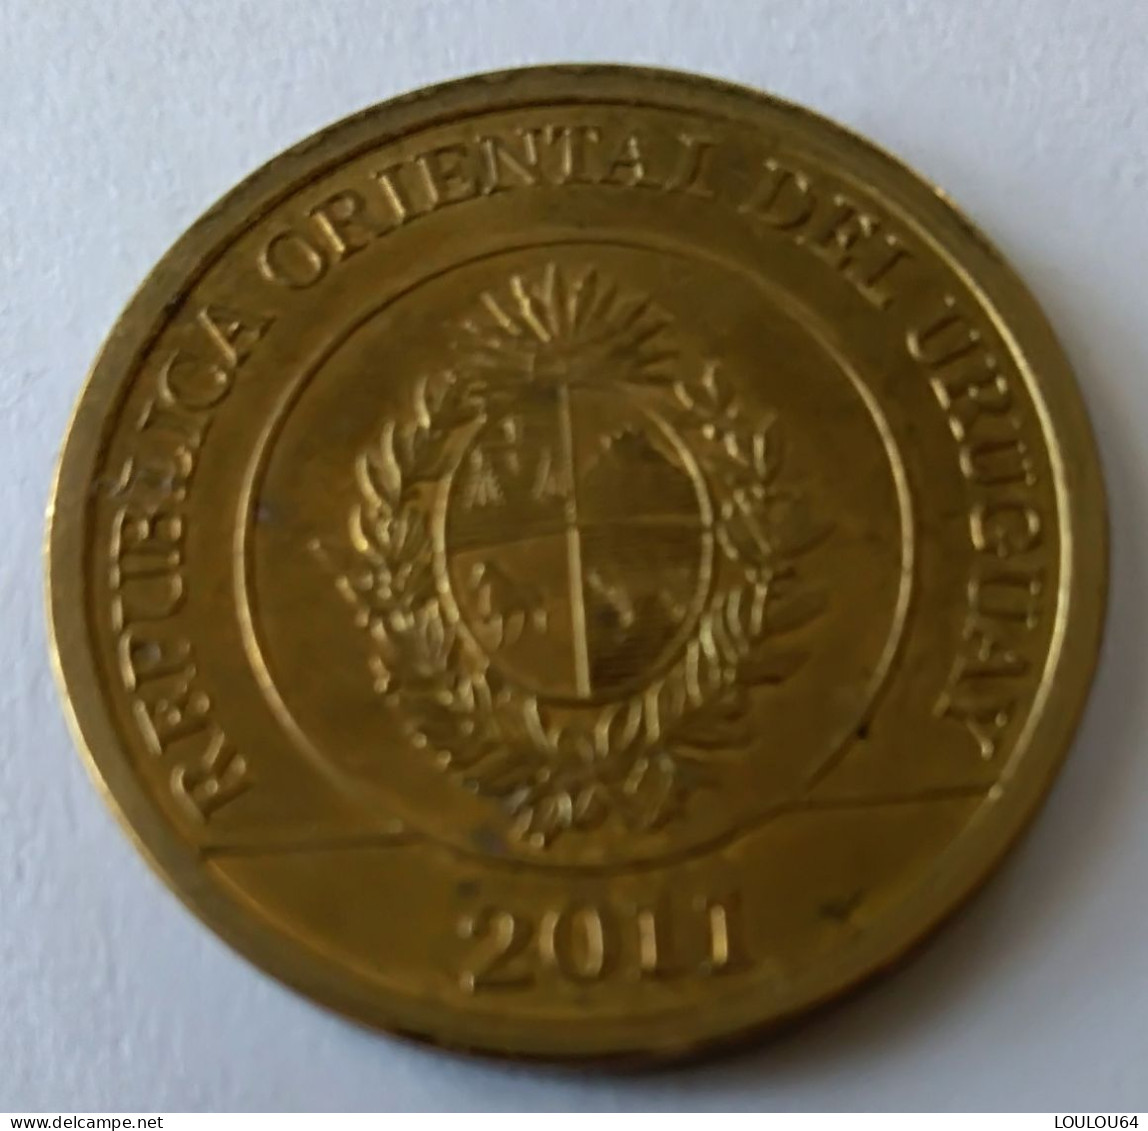 2 Pesos 2011 - Carpincho - URUGUAY - - Uruguay